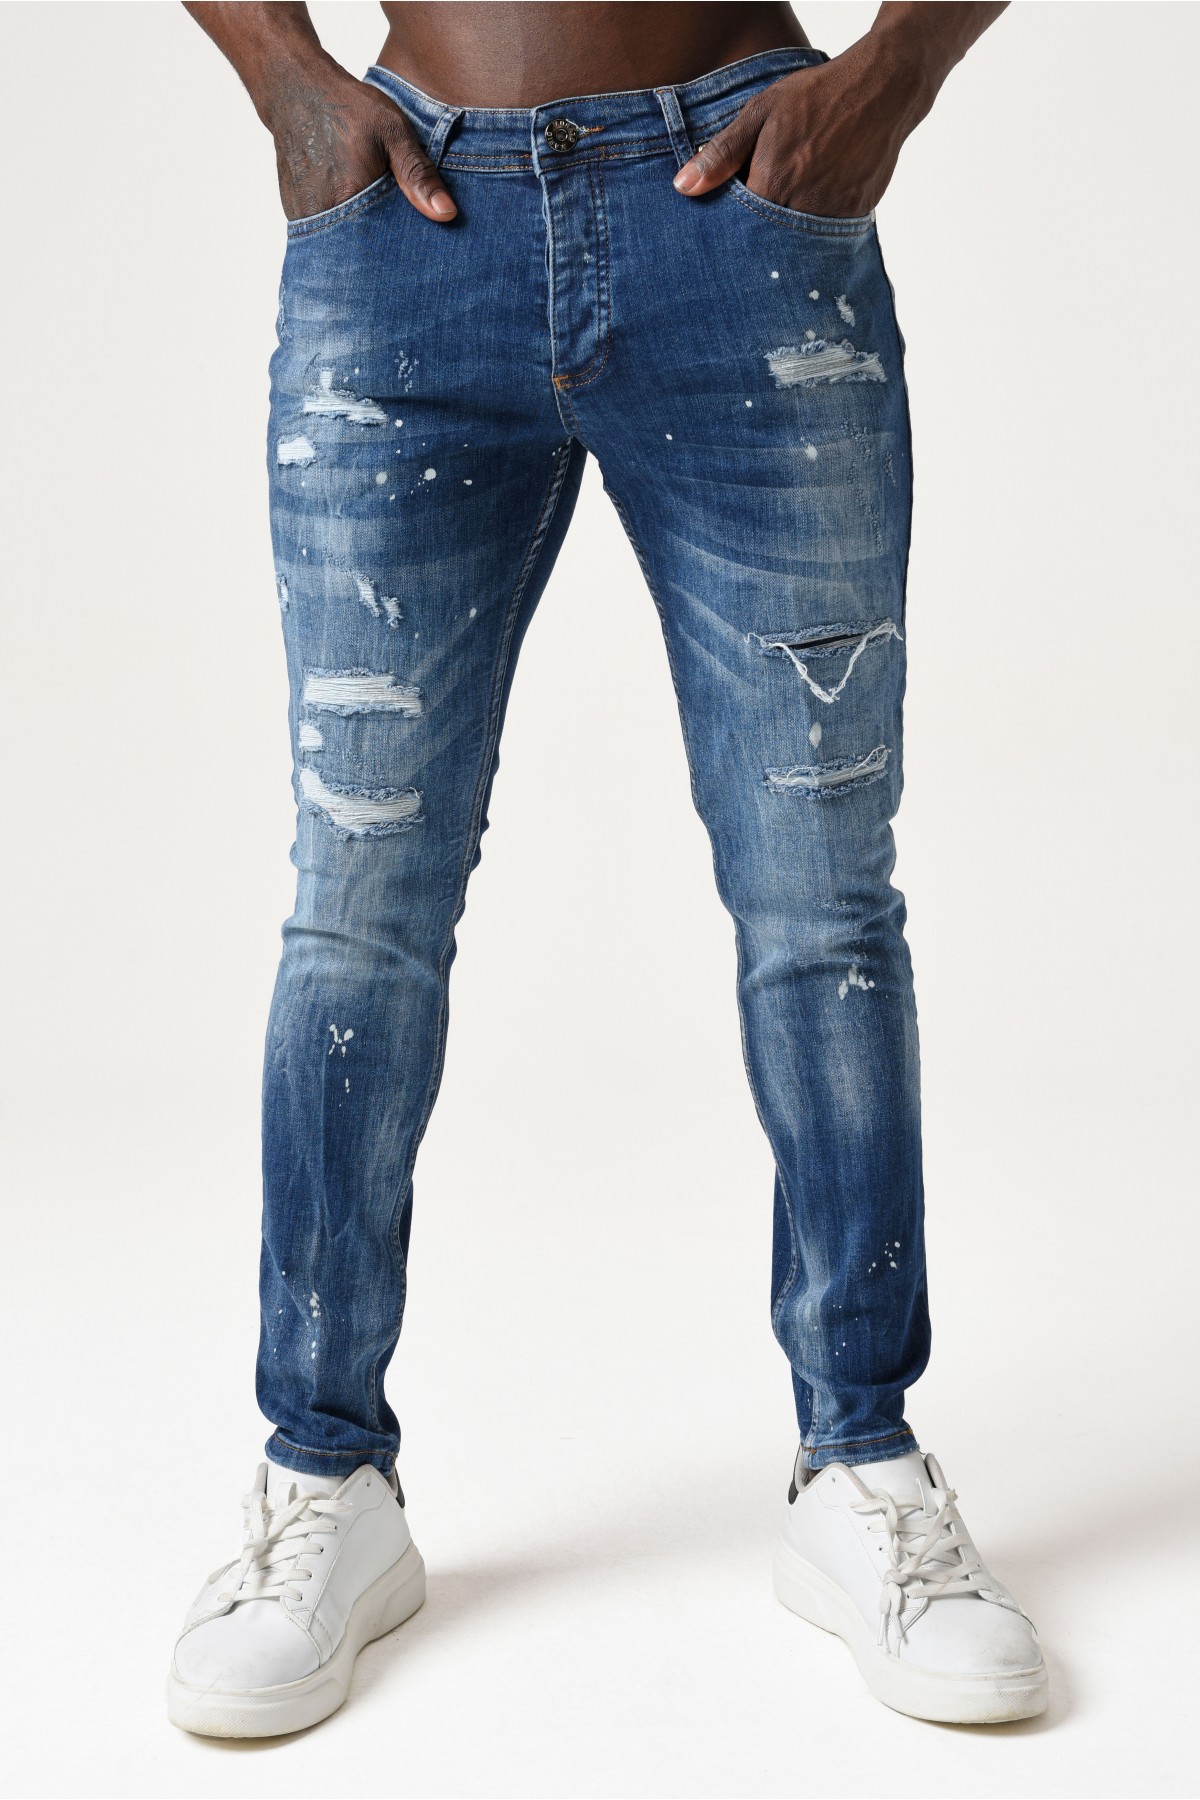 Erkek Denim Pantolon - Bel kısmı Beyaz etiketli yırtık detaylı - orta Mavi